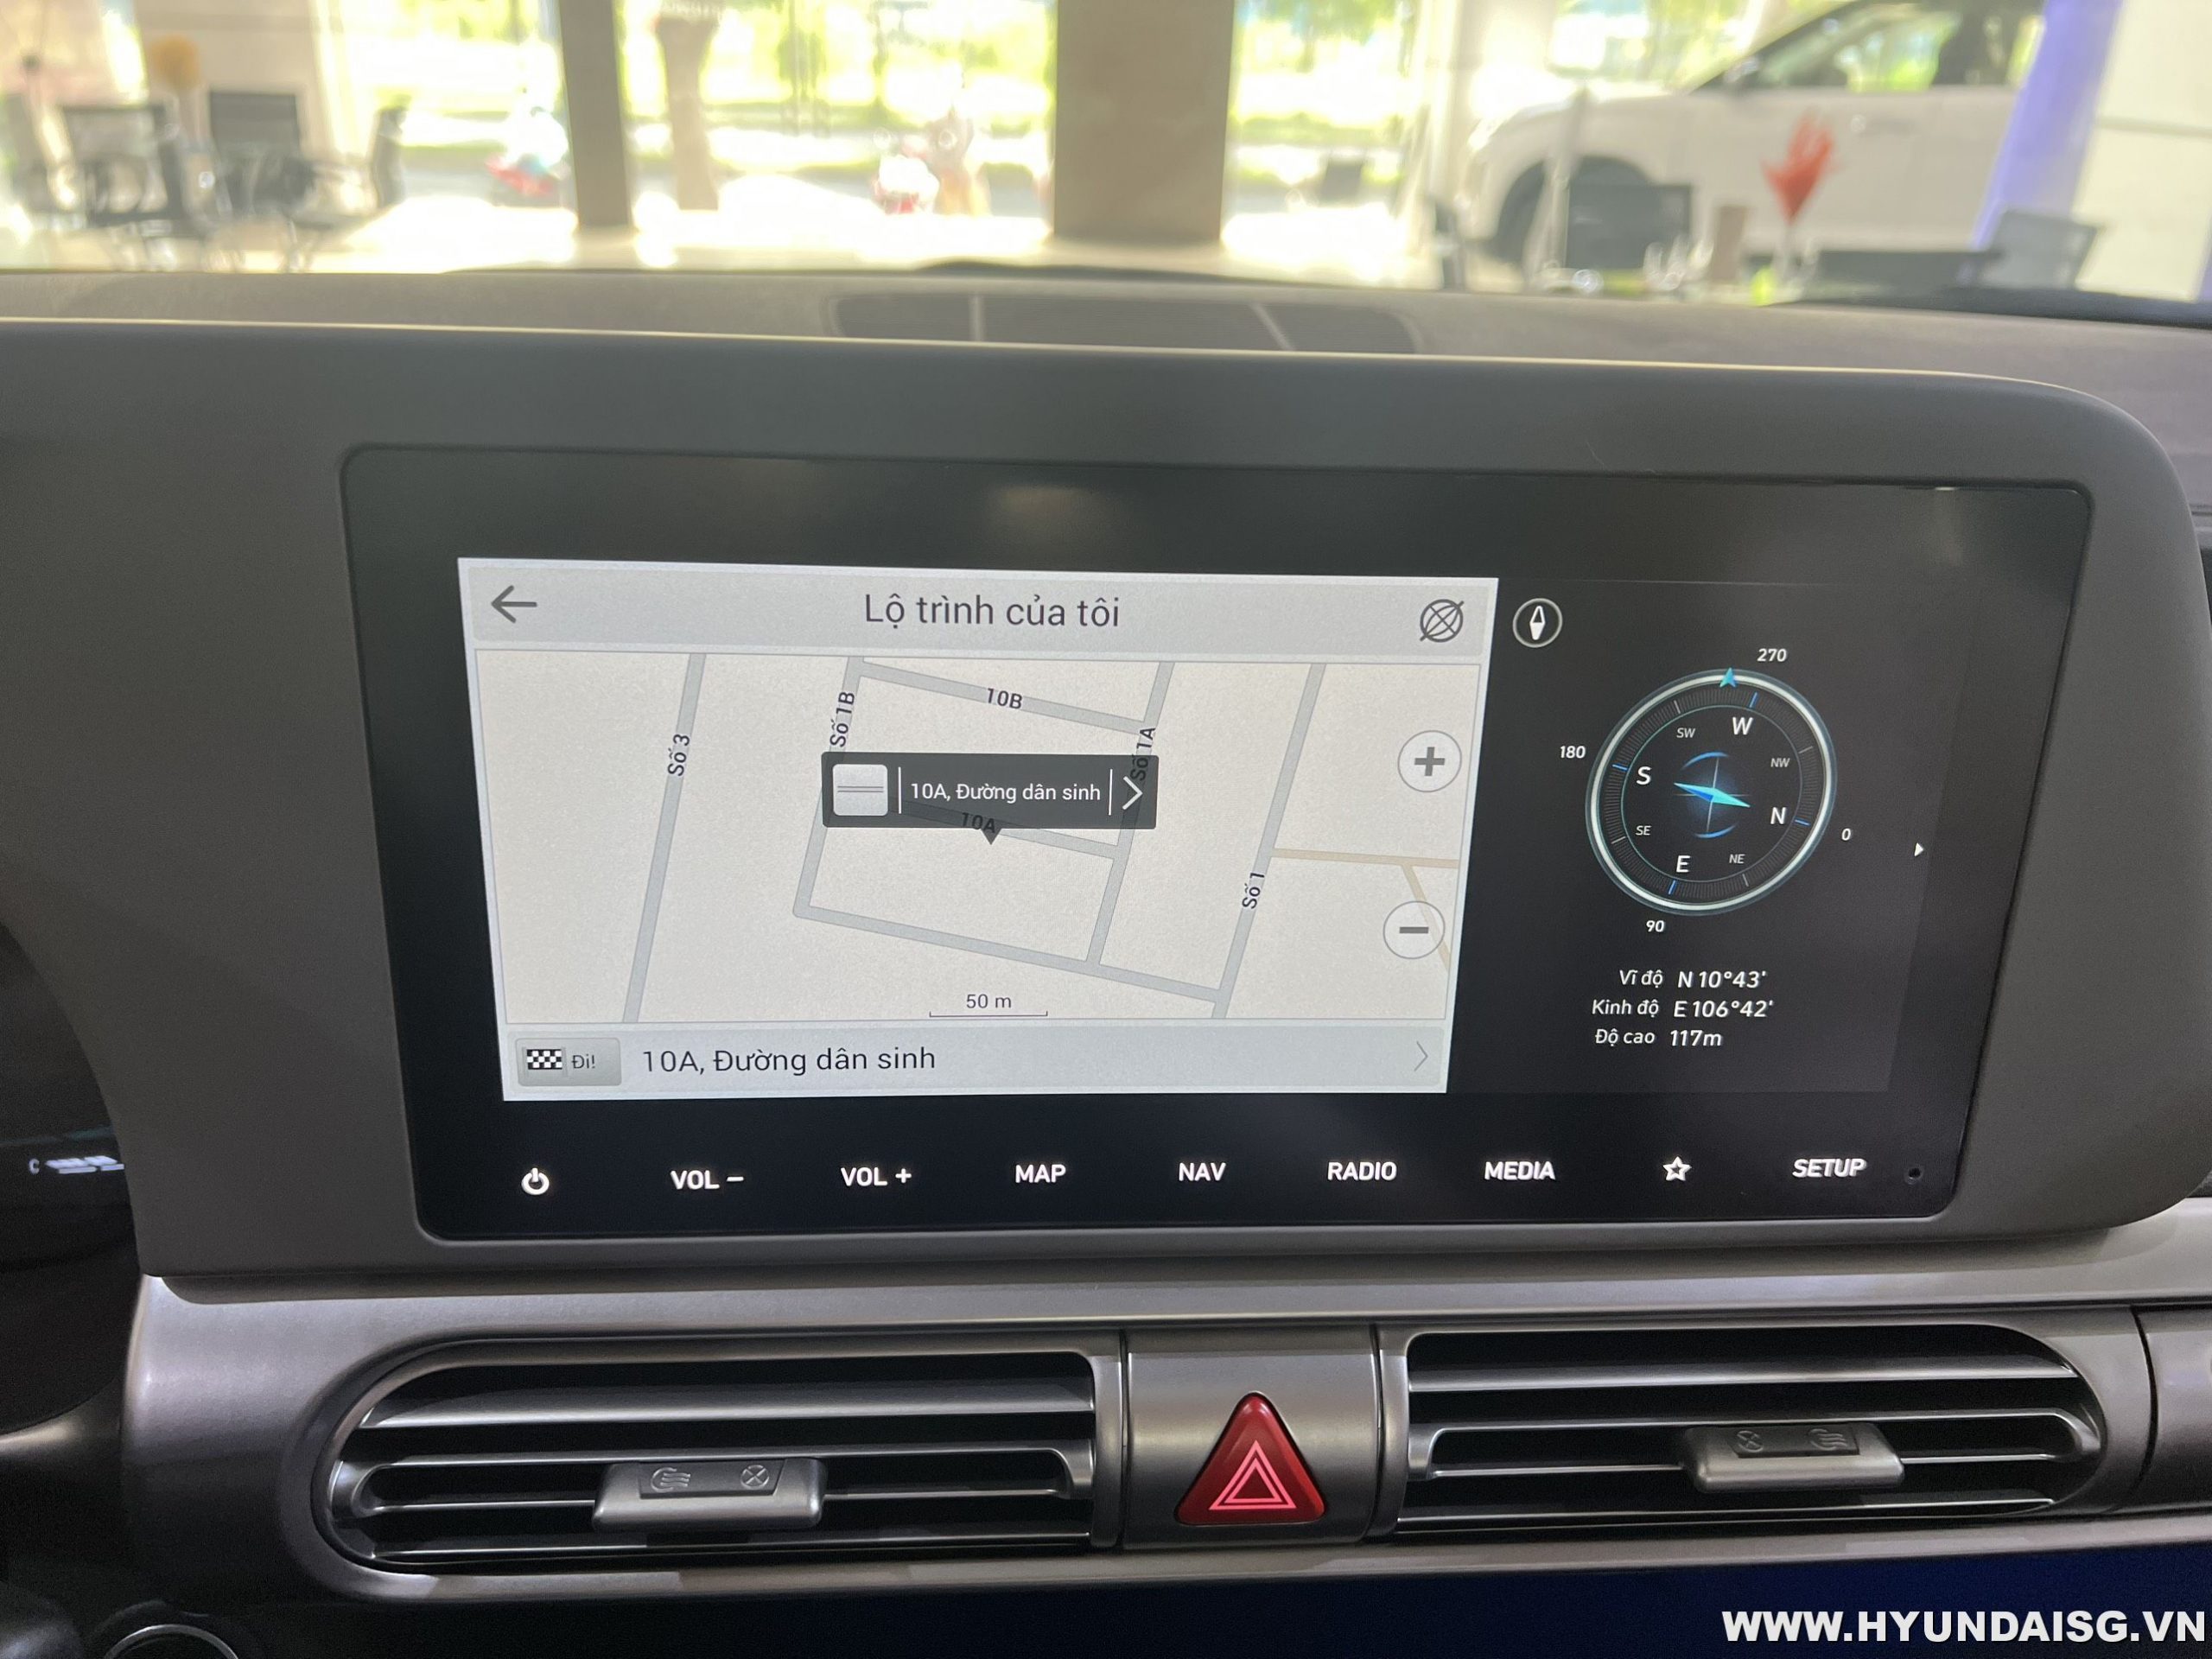 Hình Ảnh Hướng dẫn sử dụng xe Hyundai Stargazer cho người mới 46